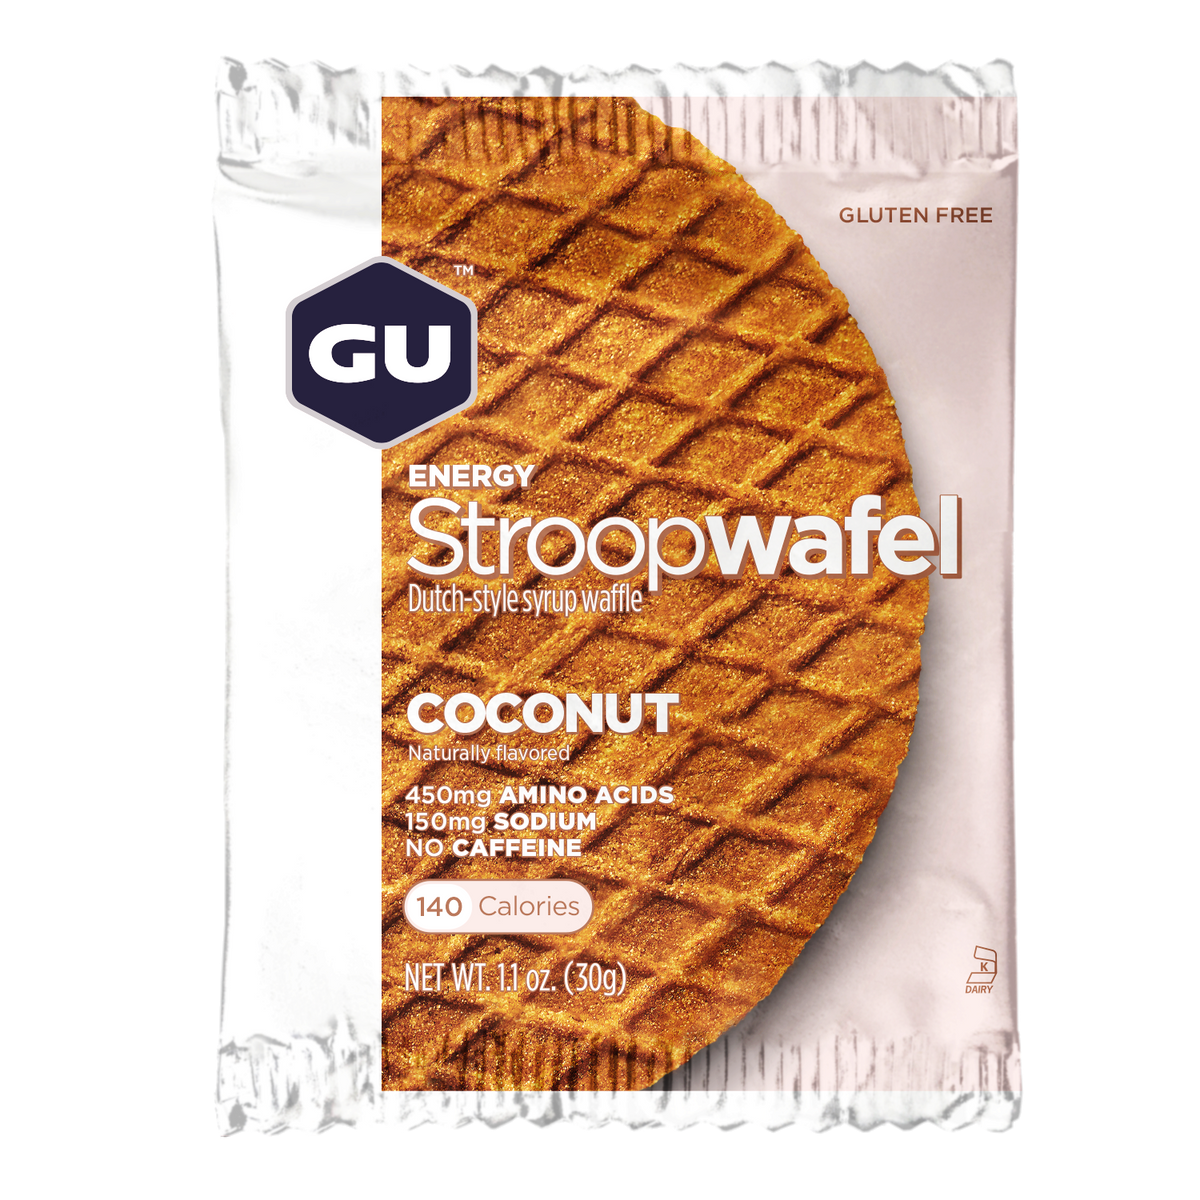 GU Energy - Stroopwafel - Coconut (Gluten Free)